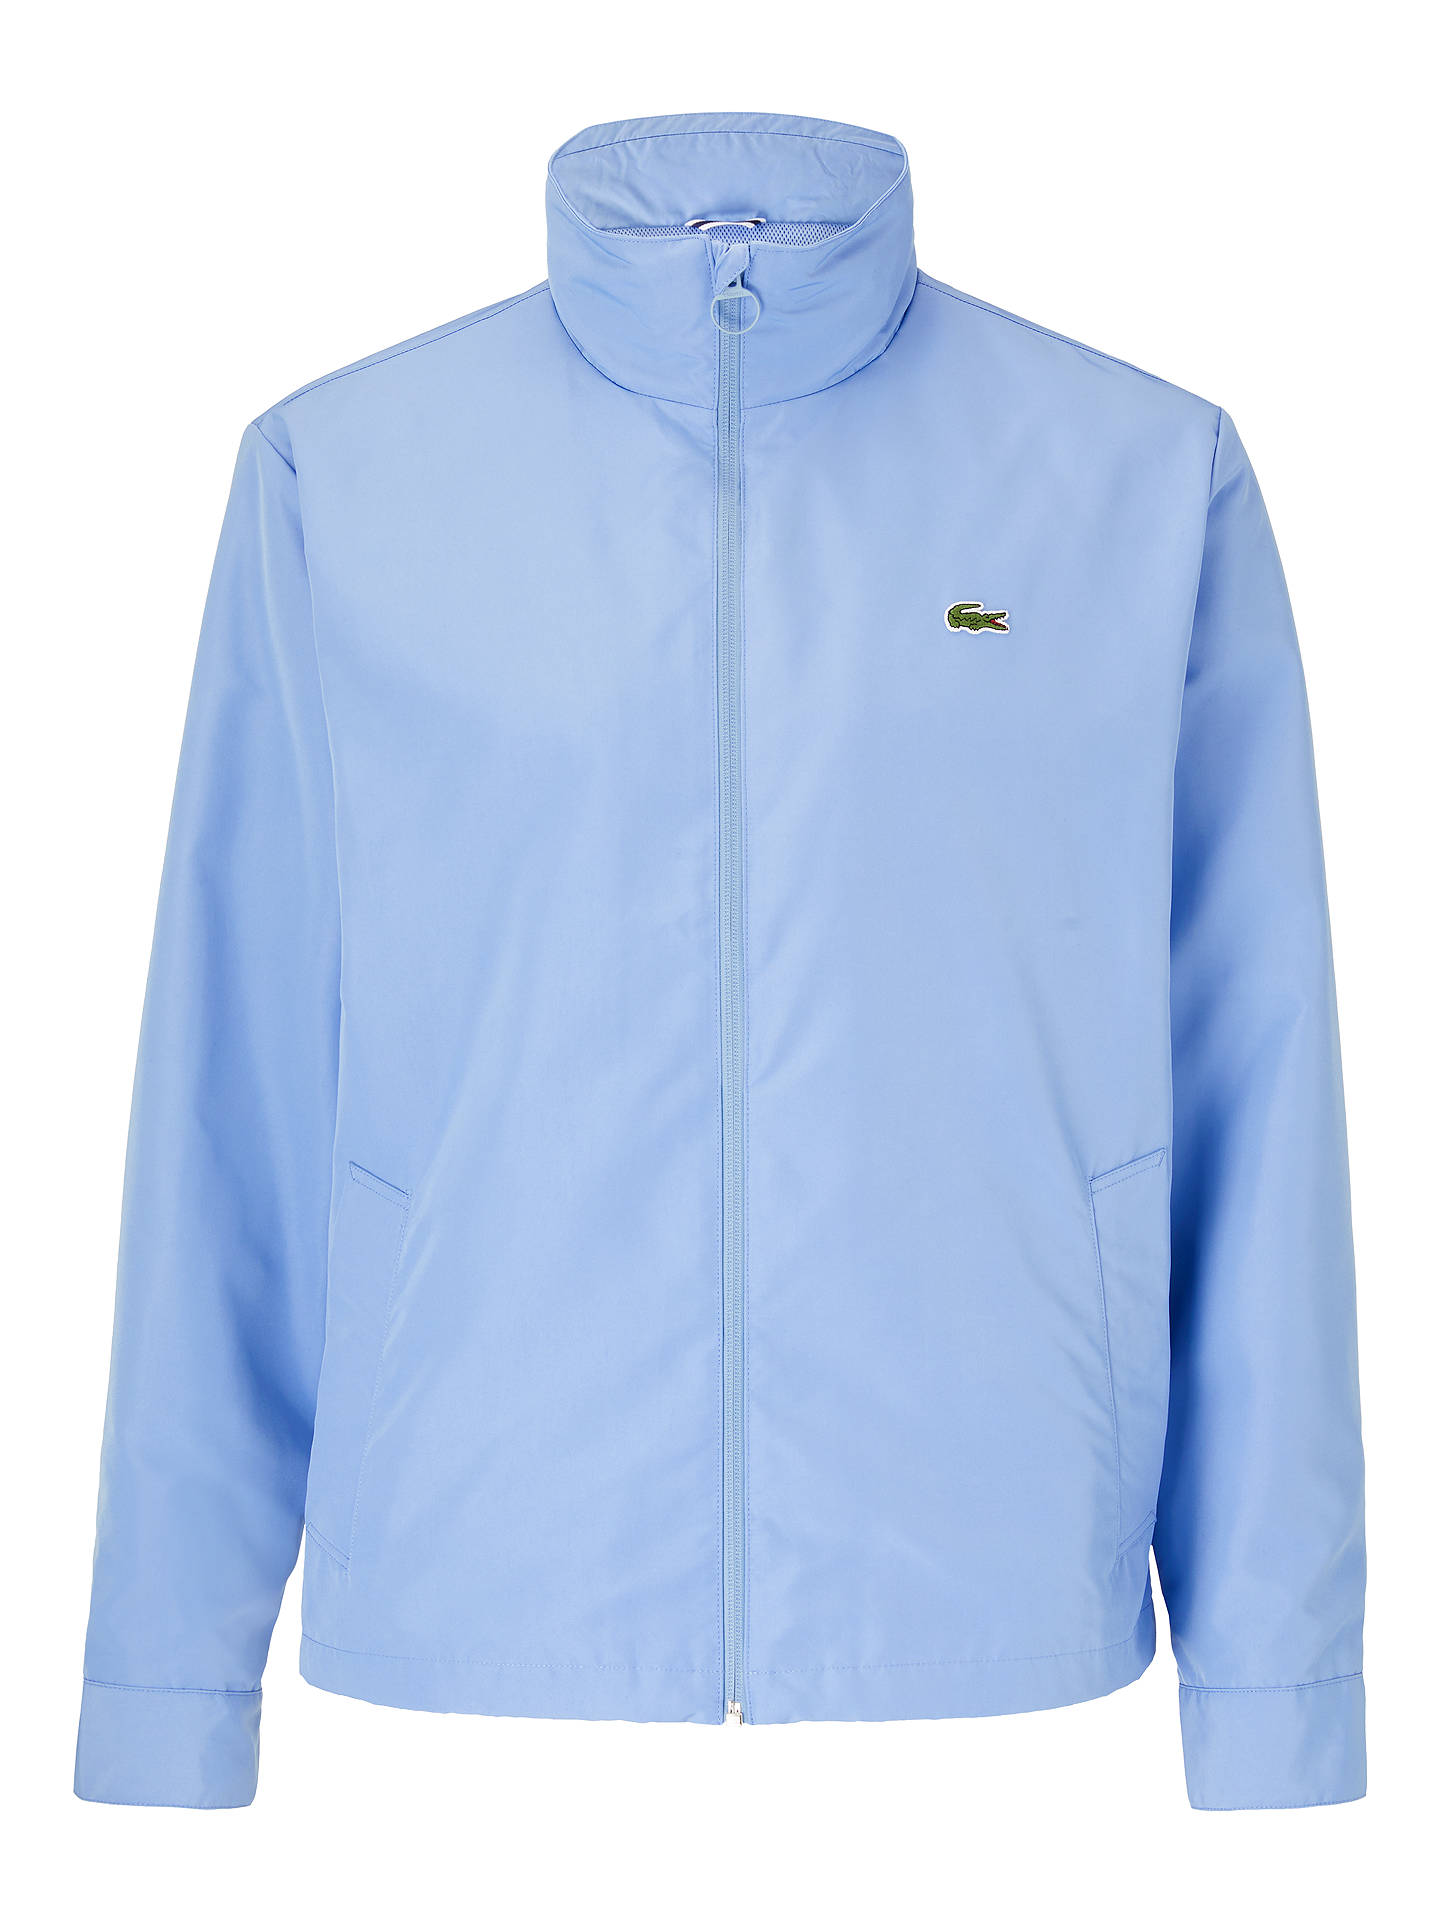 Lacoste Packaway Hood Jacket, Sky Blue Aey at John Lewis & Partners